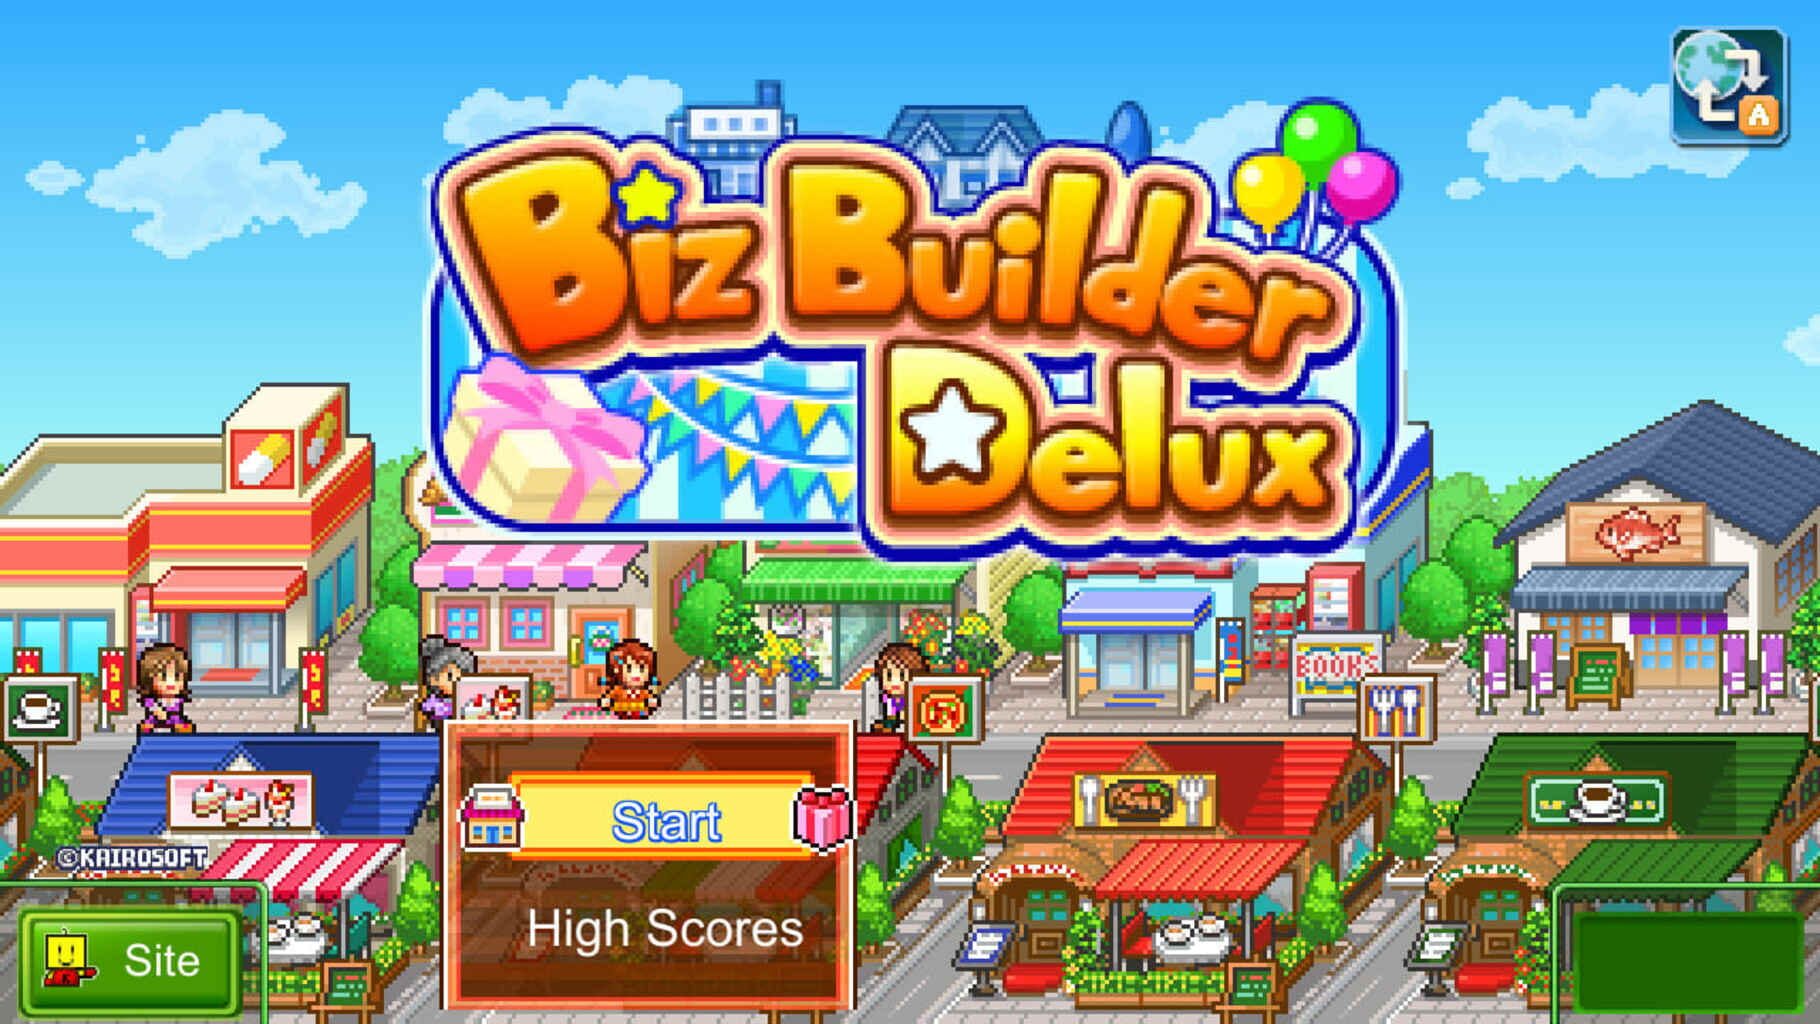 Captura de pantalla - Biz Builder Delux